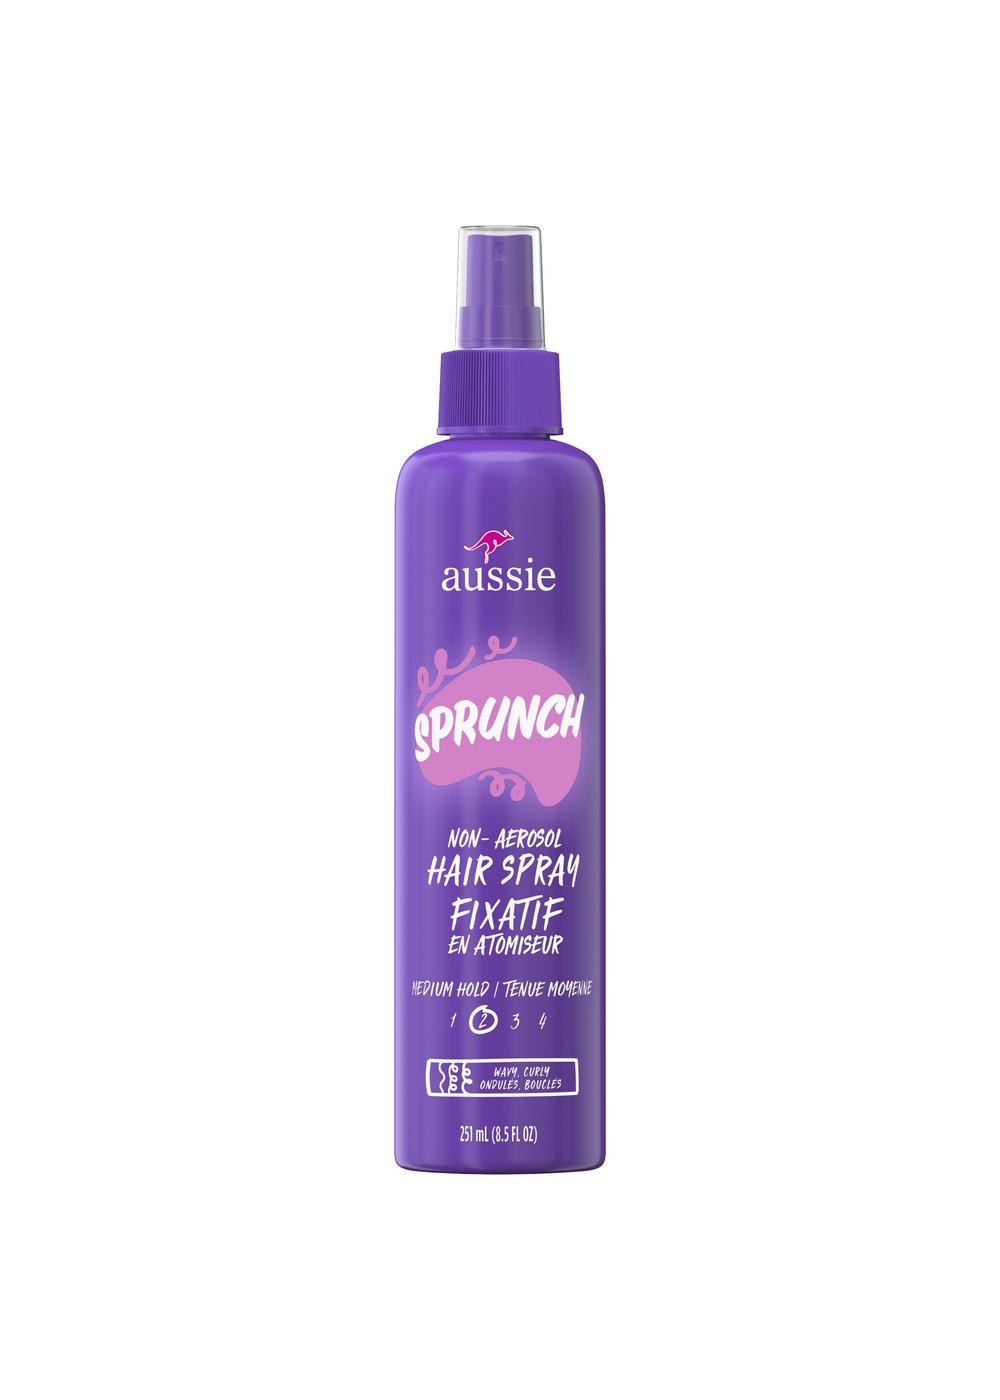 Aussie Sprunch Non-Aerosol Hair Spray; image 1 of 11